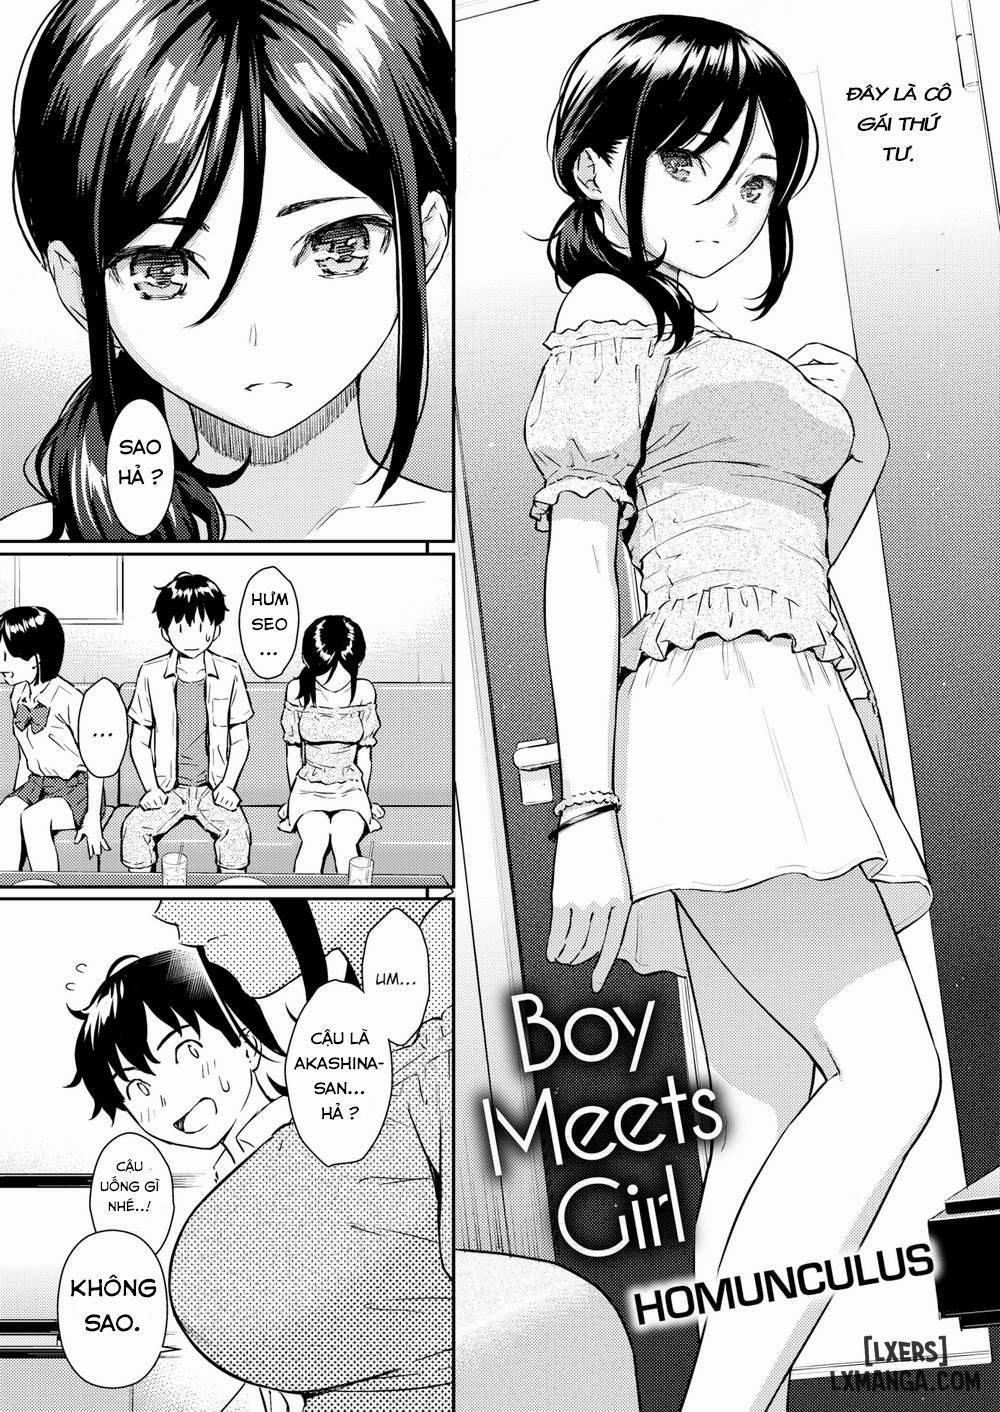 Boy Meets Girl Chương Oneshot Trang 2